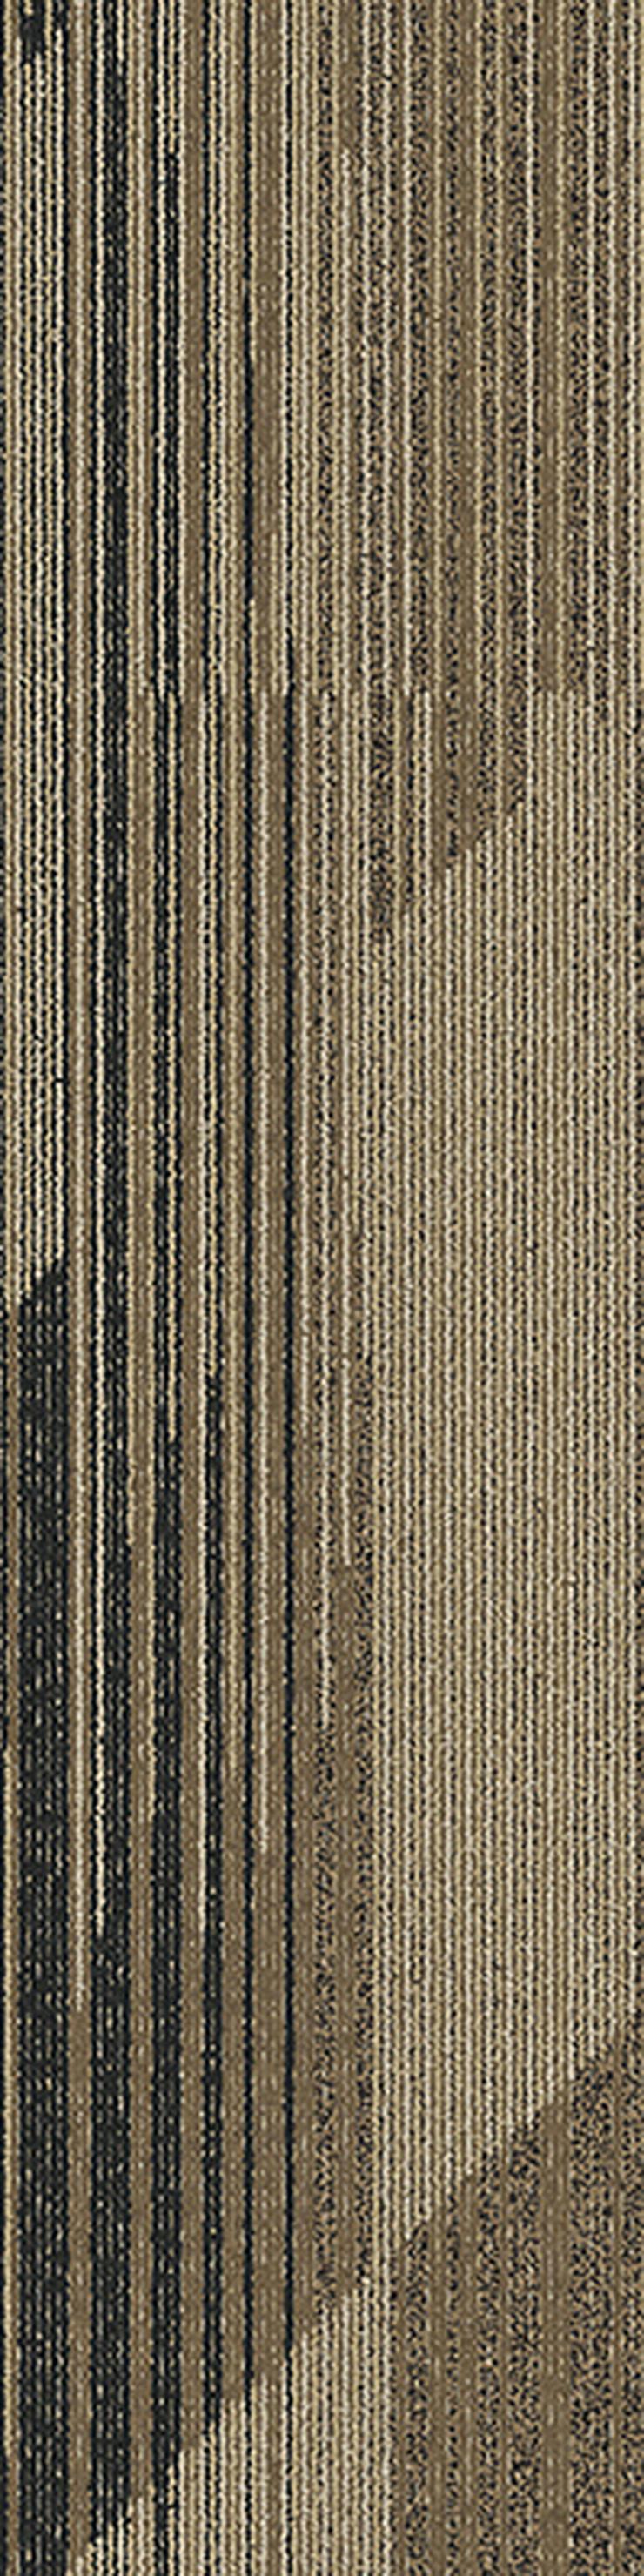 Bild 8: Gestreifte 'Laminat' Teppichfliesen. Bodenbelag in Grau und Braun